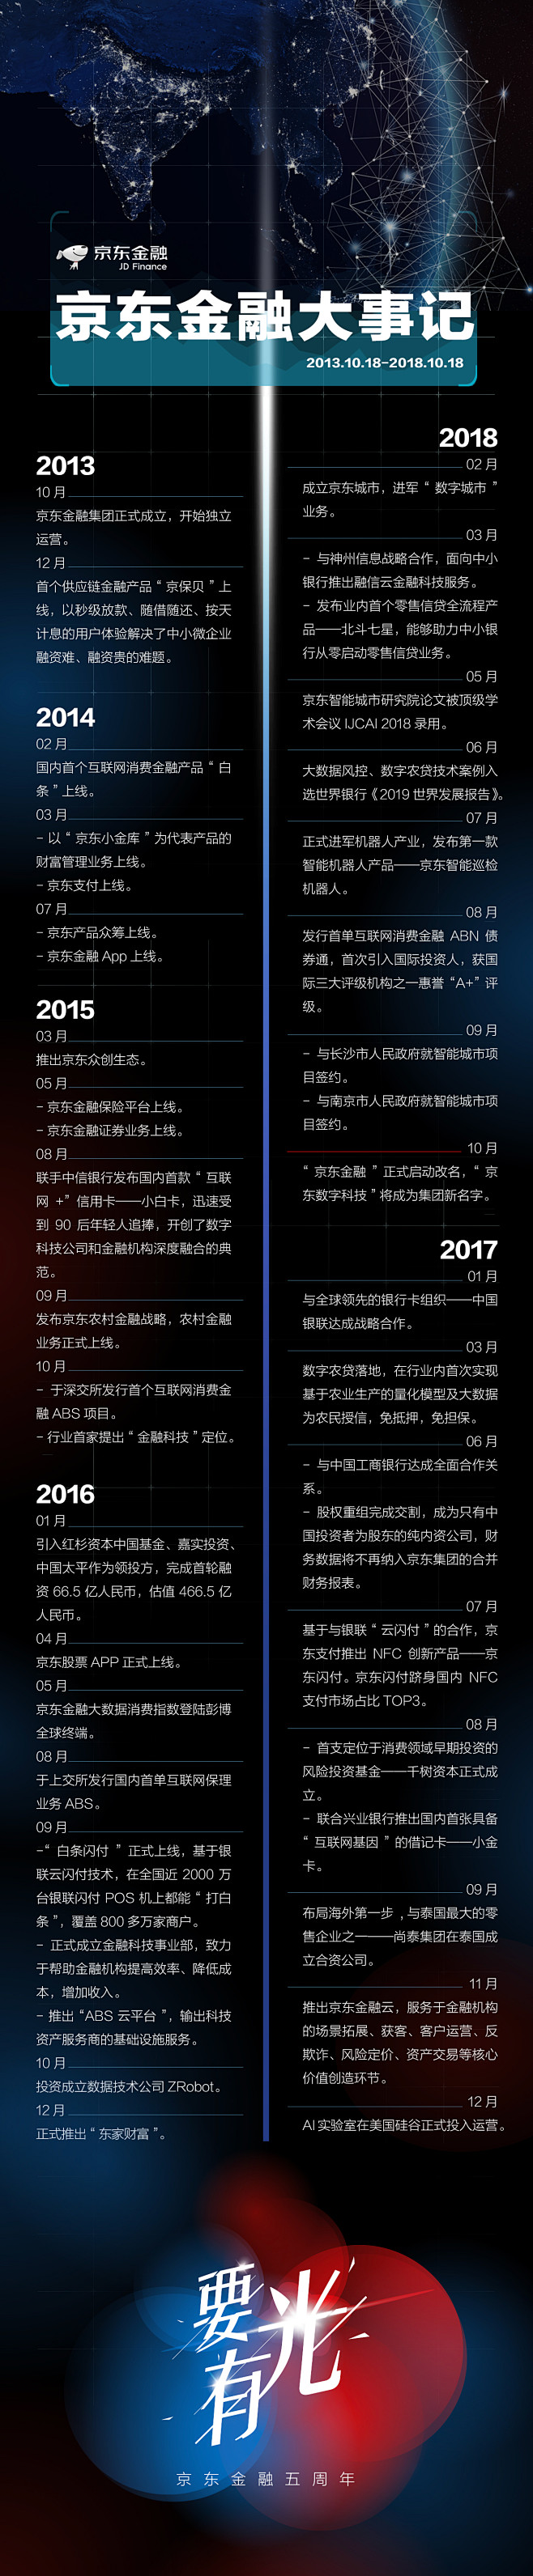 2018、京东金融5周年、大事记、长图